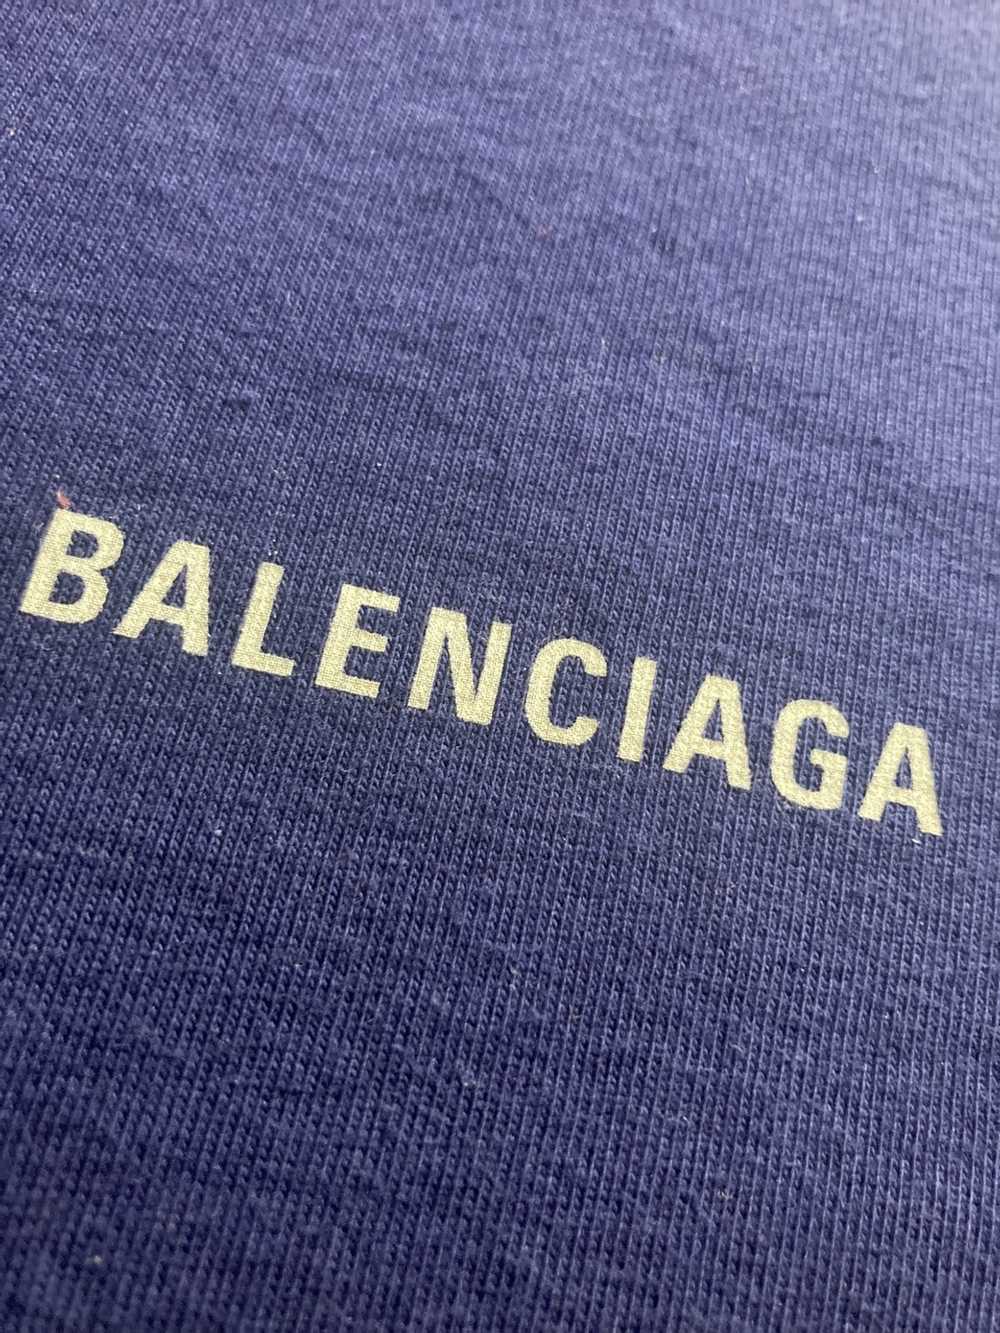 Balenciaga Balenciaga small logo oversized T-shirt - image 6